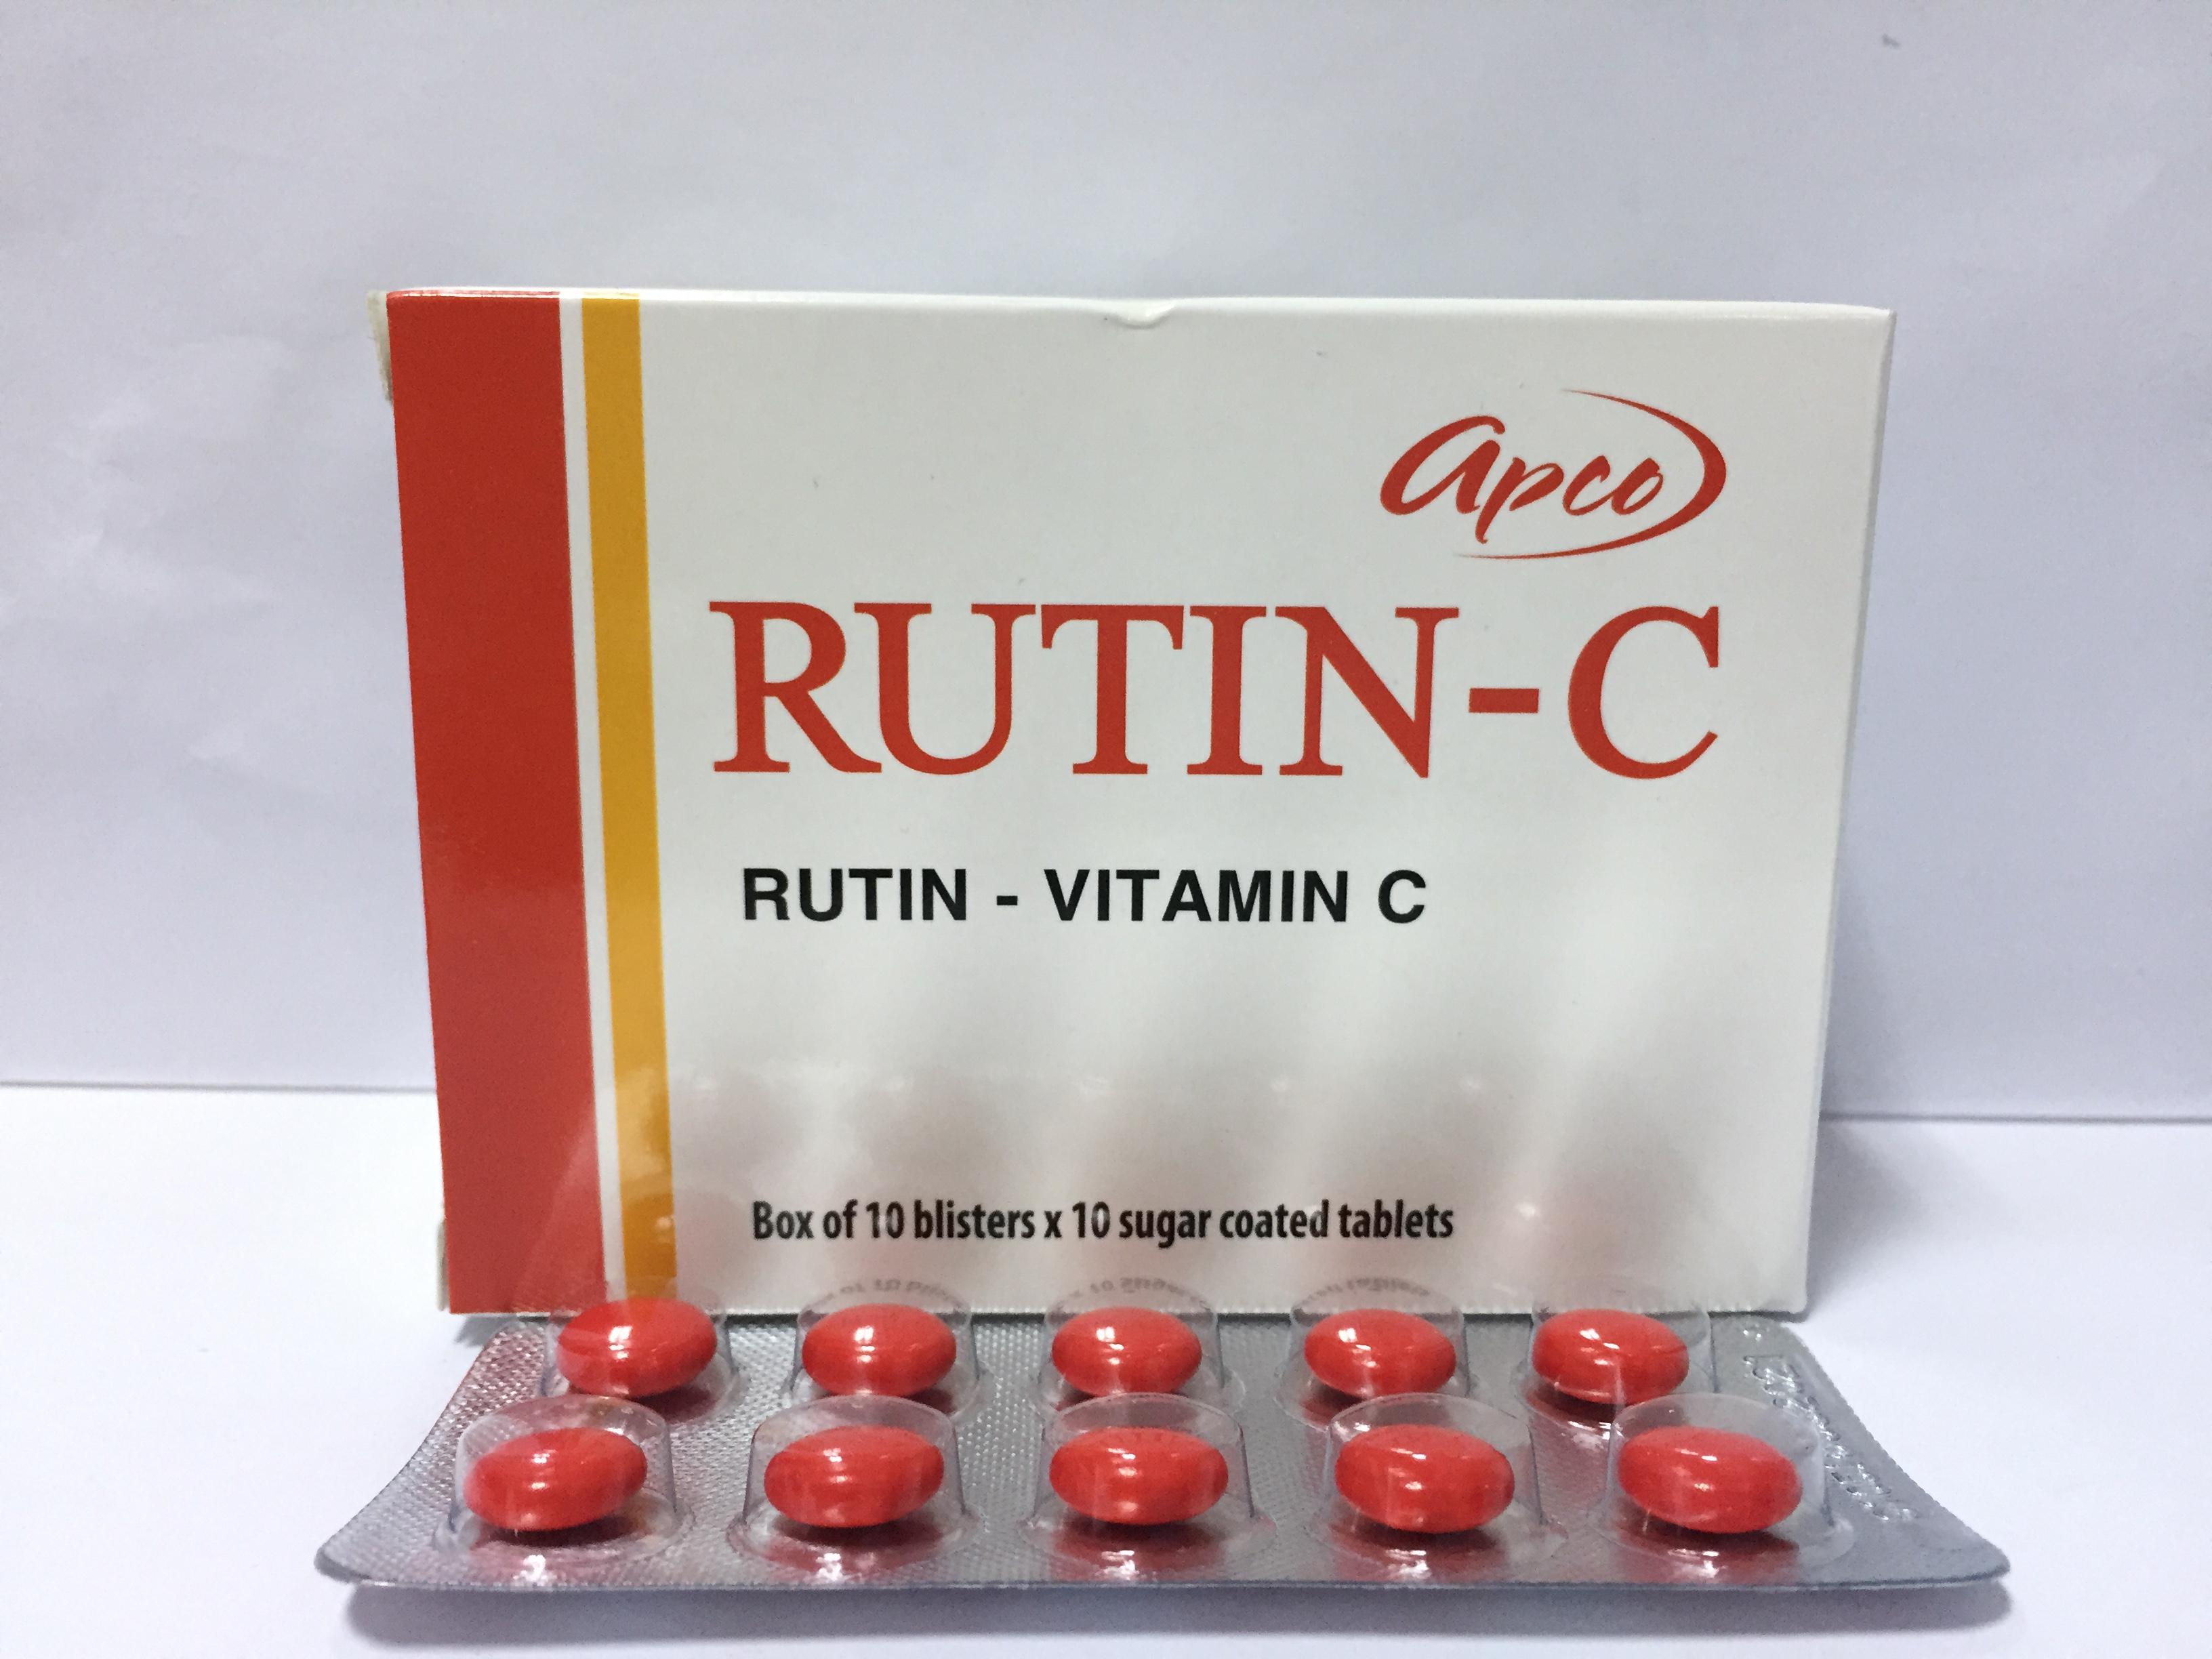 Rutin C Apco (H/100v)